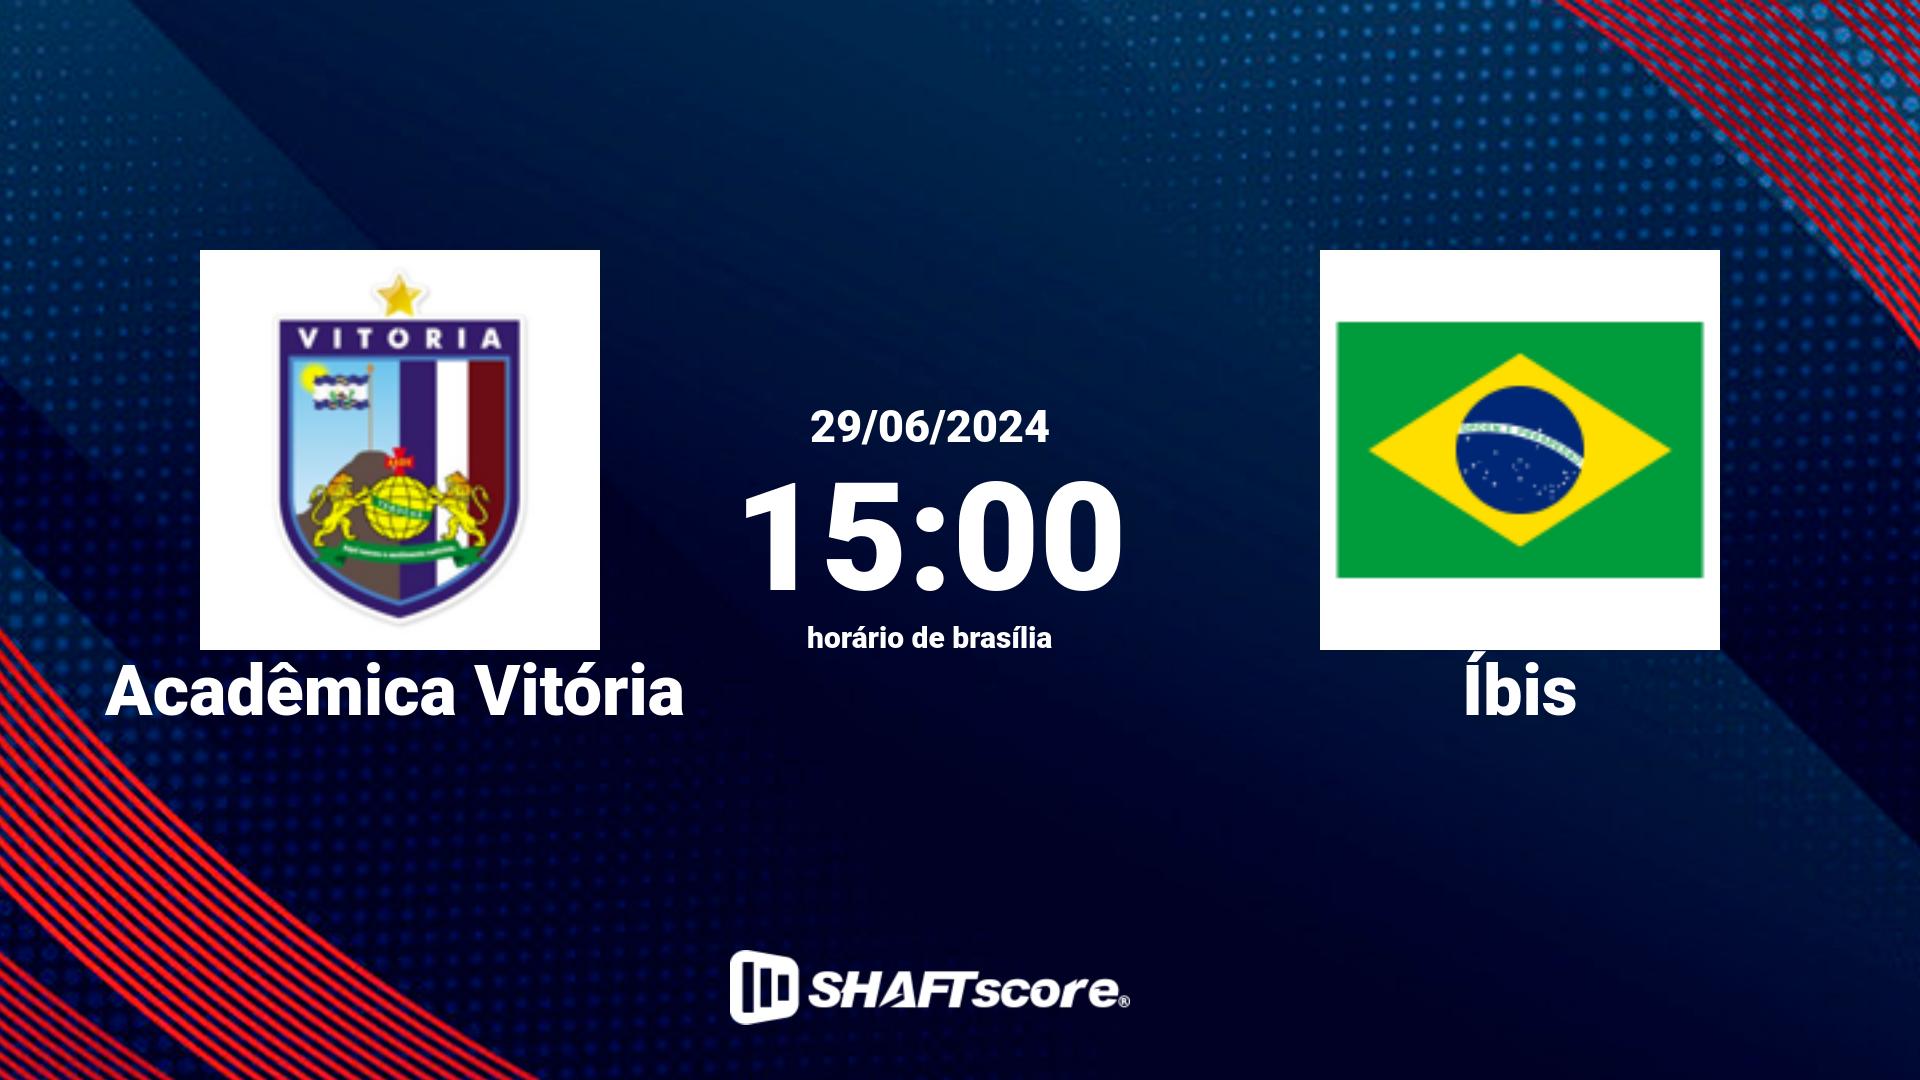 Estatísticas do jogo Acadêmica Vitória vs Íbis 29.06 15:00